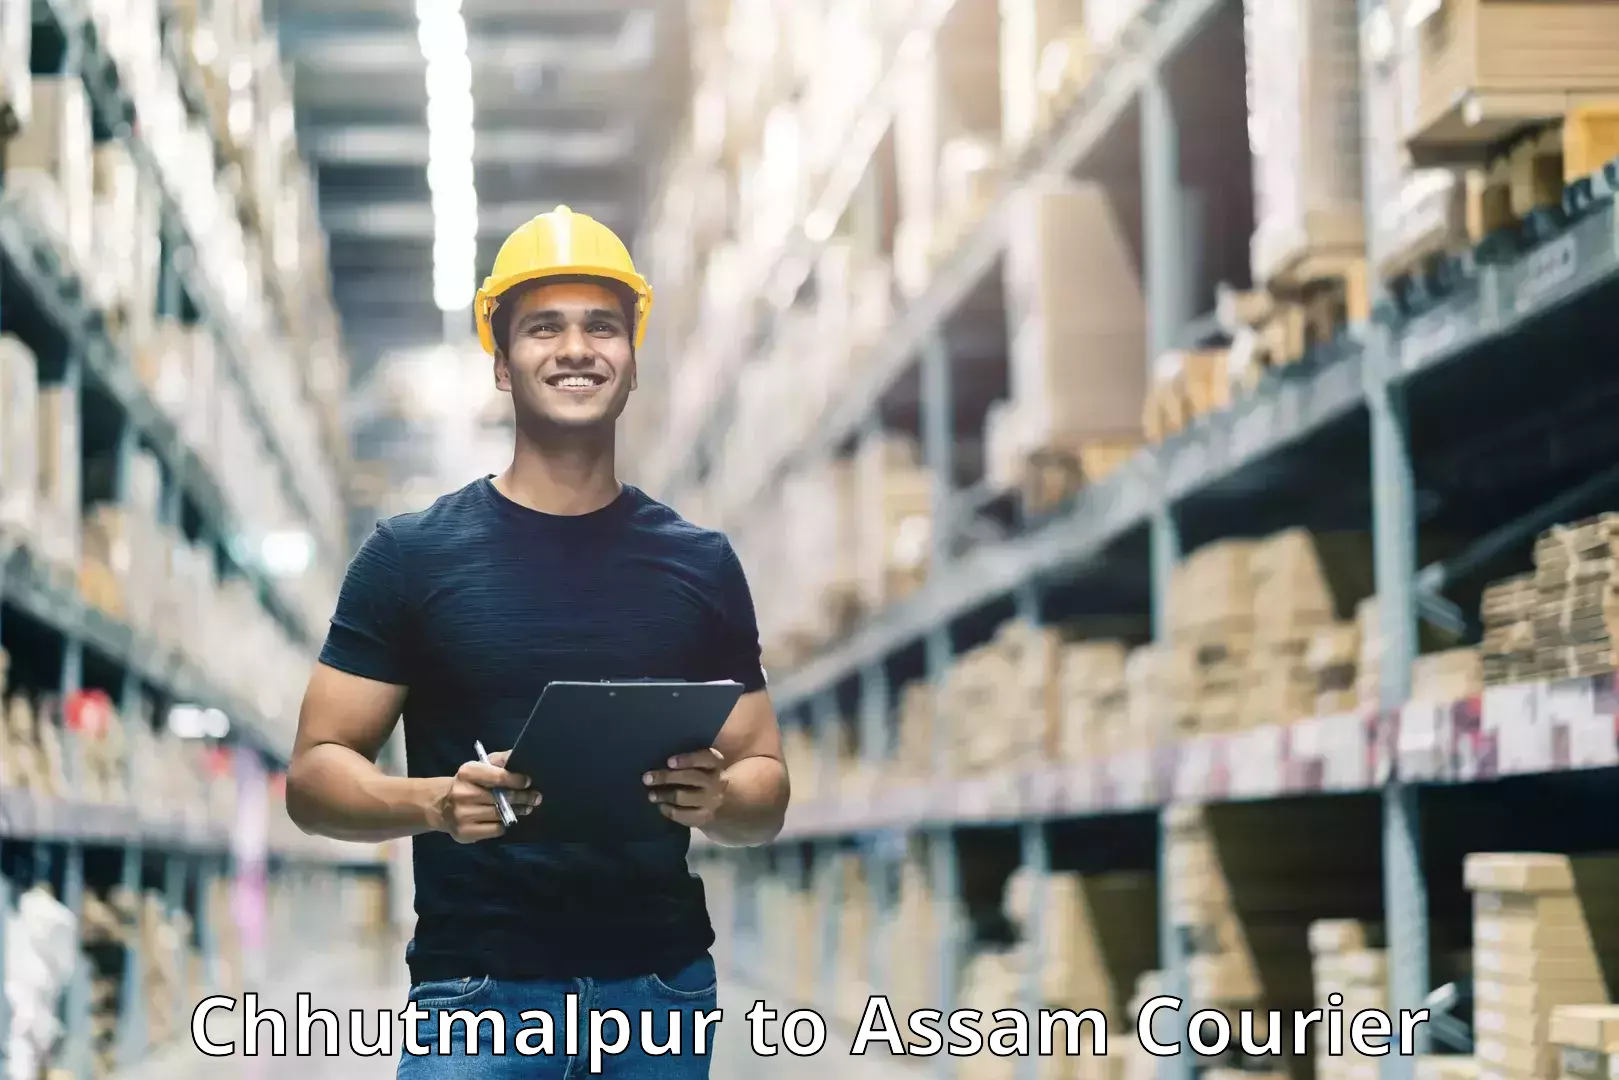 Efficient cargo handling in Chhutmalpur to Assam